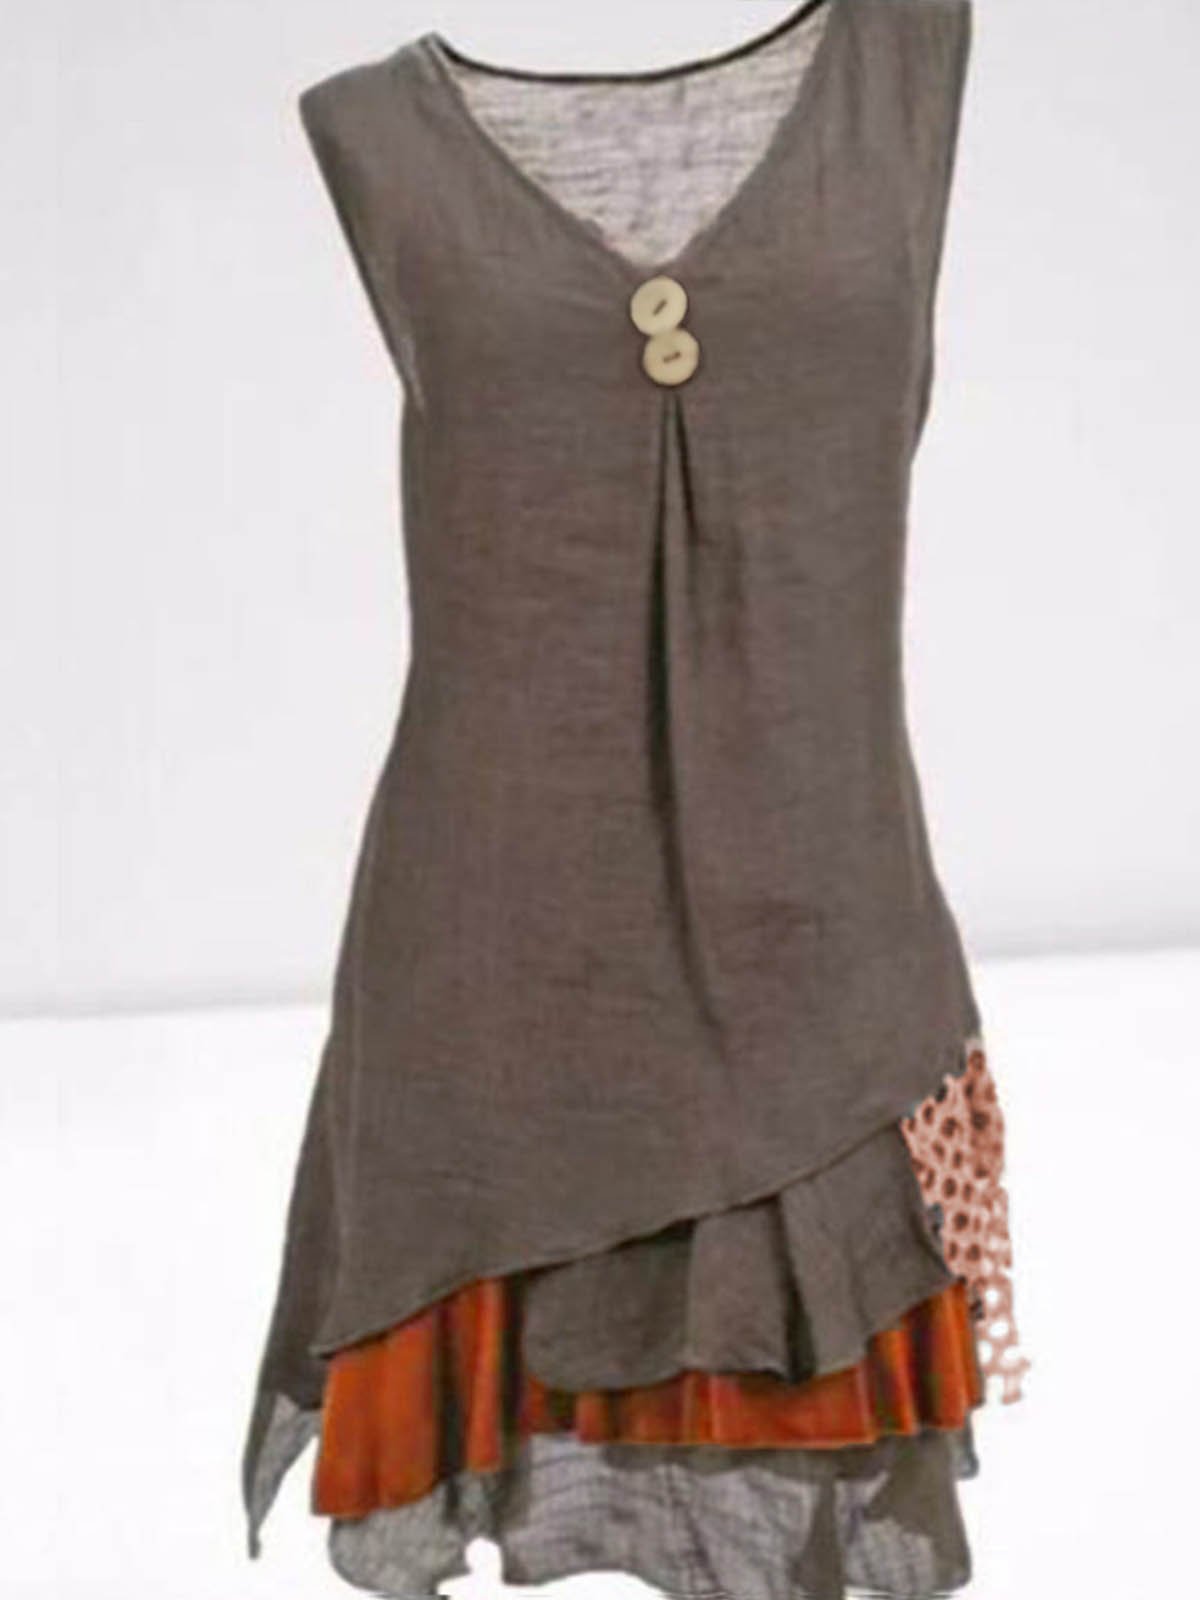 Women's Casual Sleeveless Cotton-Blend Dress